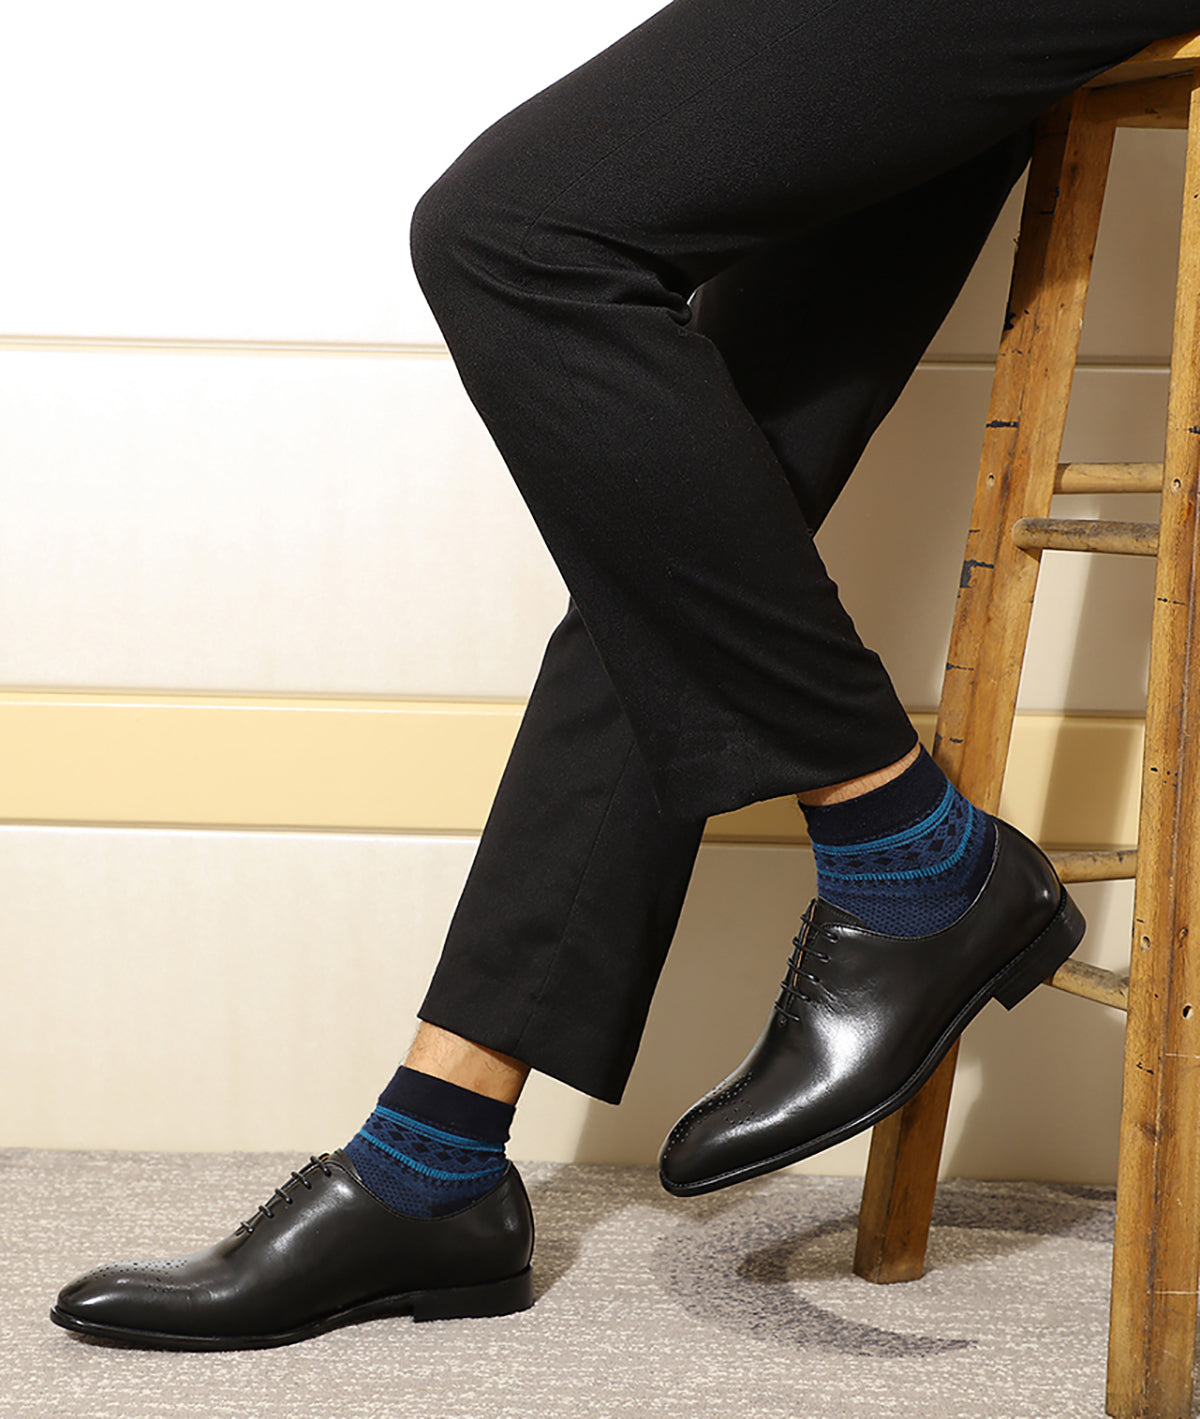 Zapatos Oxford de moda hechos a mano para hombre